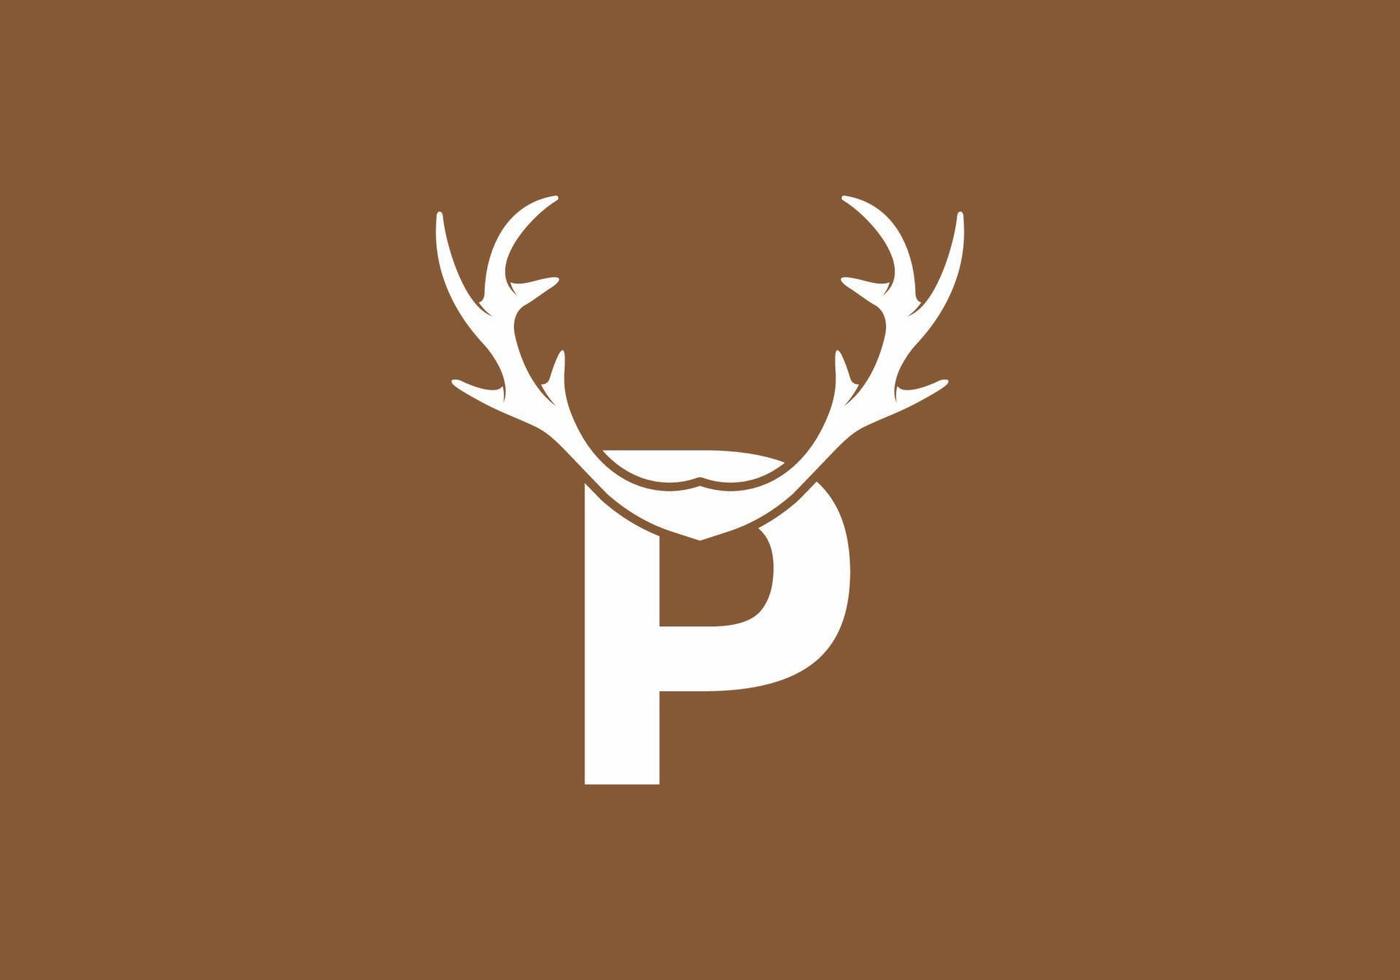 colore bianco marrone della p lettera iniziale con corno di cervo vettore